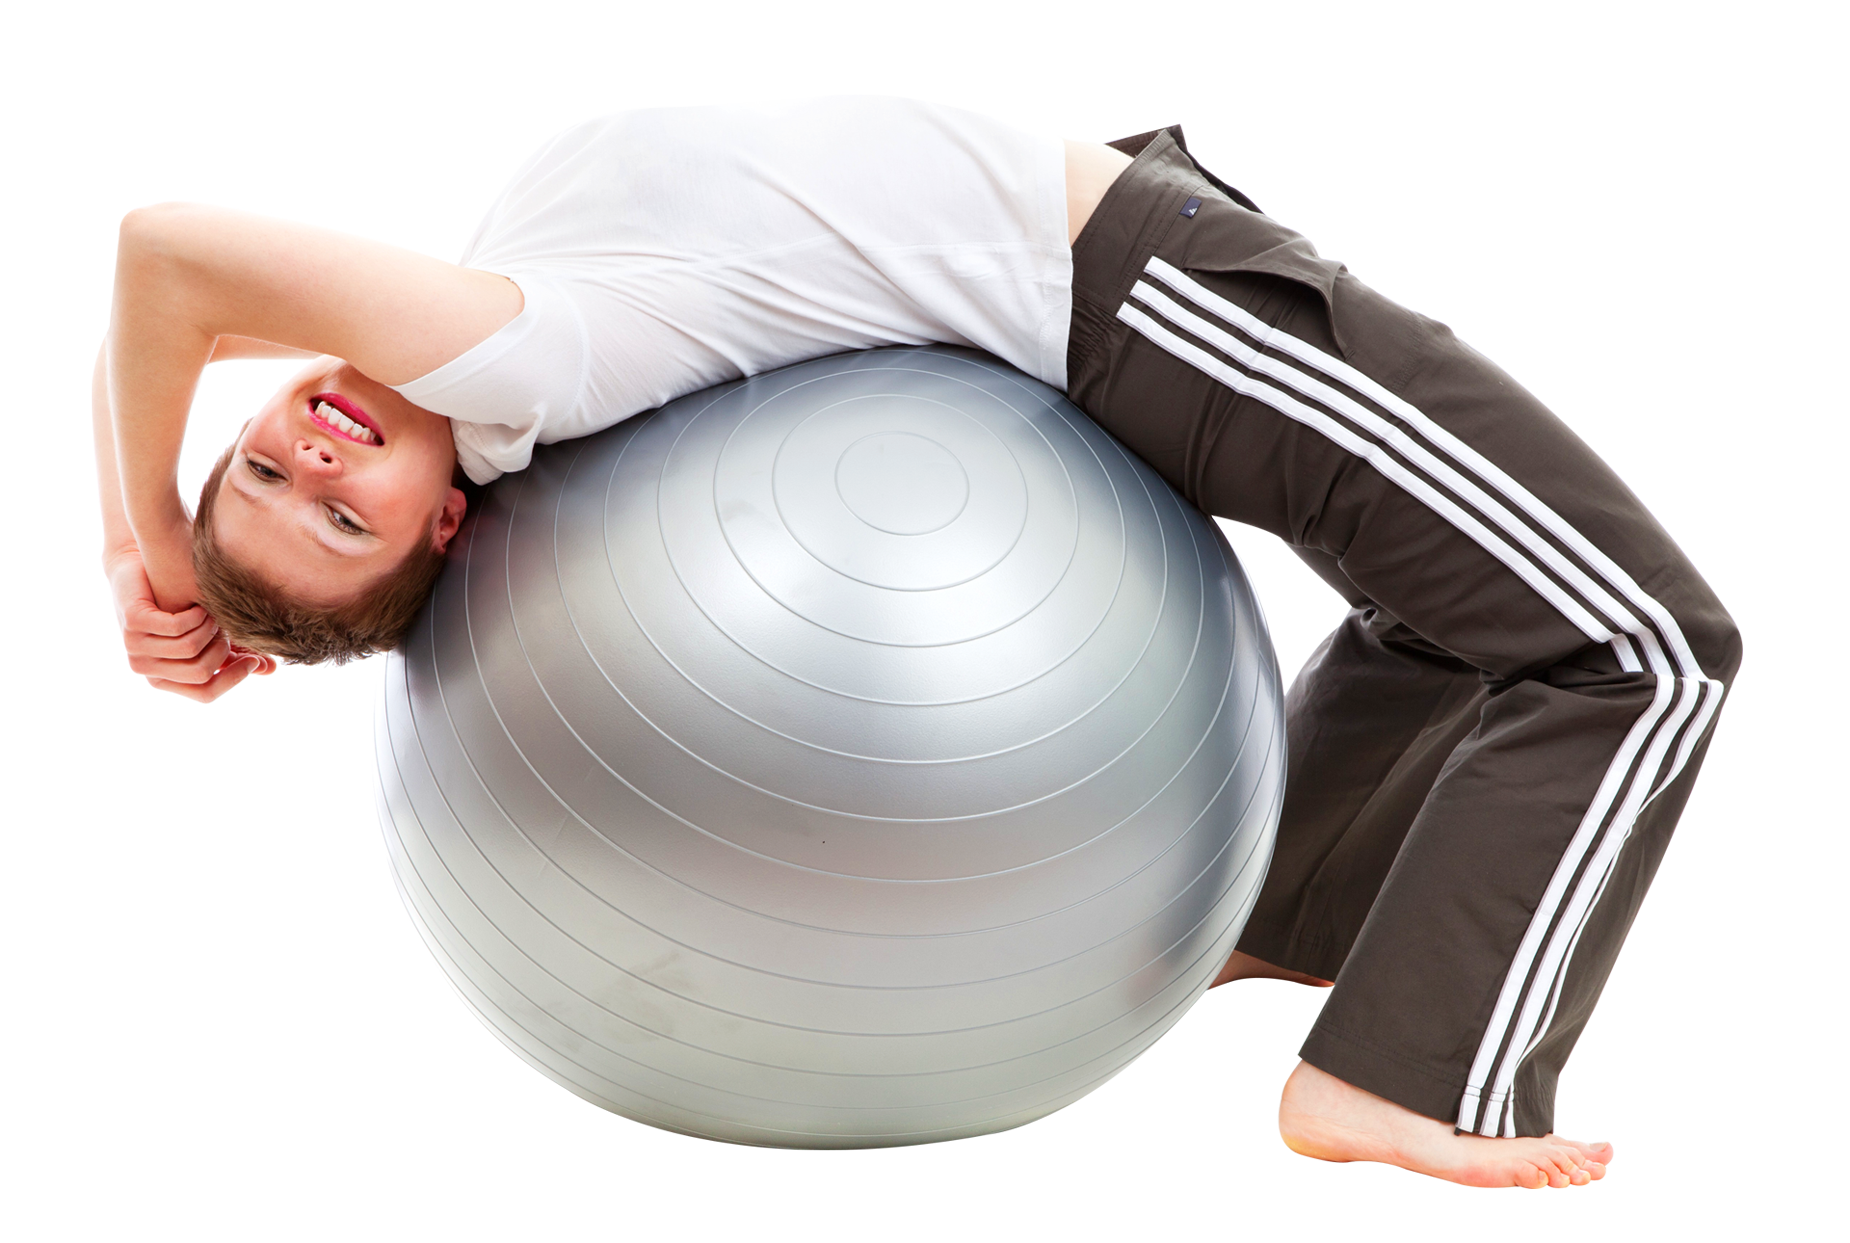 Exercize ball. Мяч для фитнеса фитбол-75. Упражнения с мячом. Мяч для занятий лечебной физкультурой. Упражнения с гимнастическим мячом.